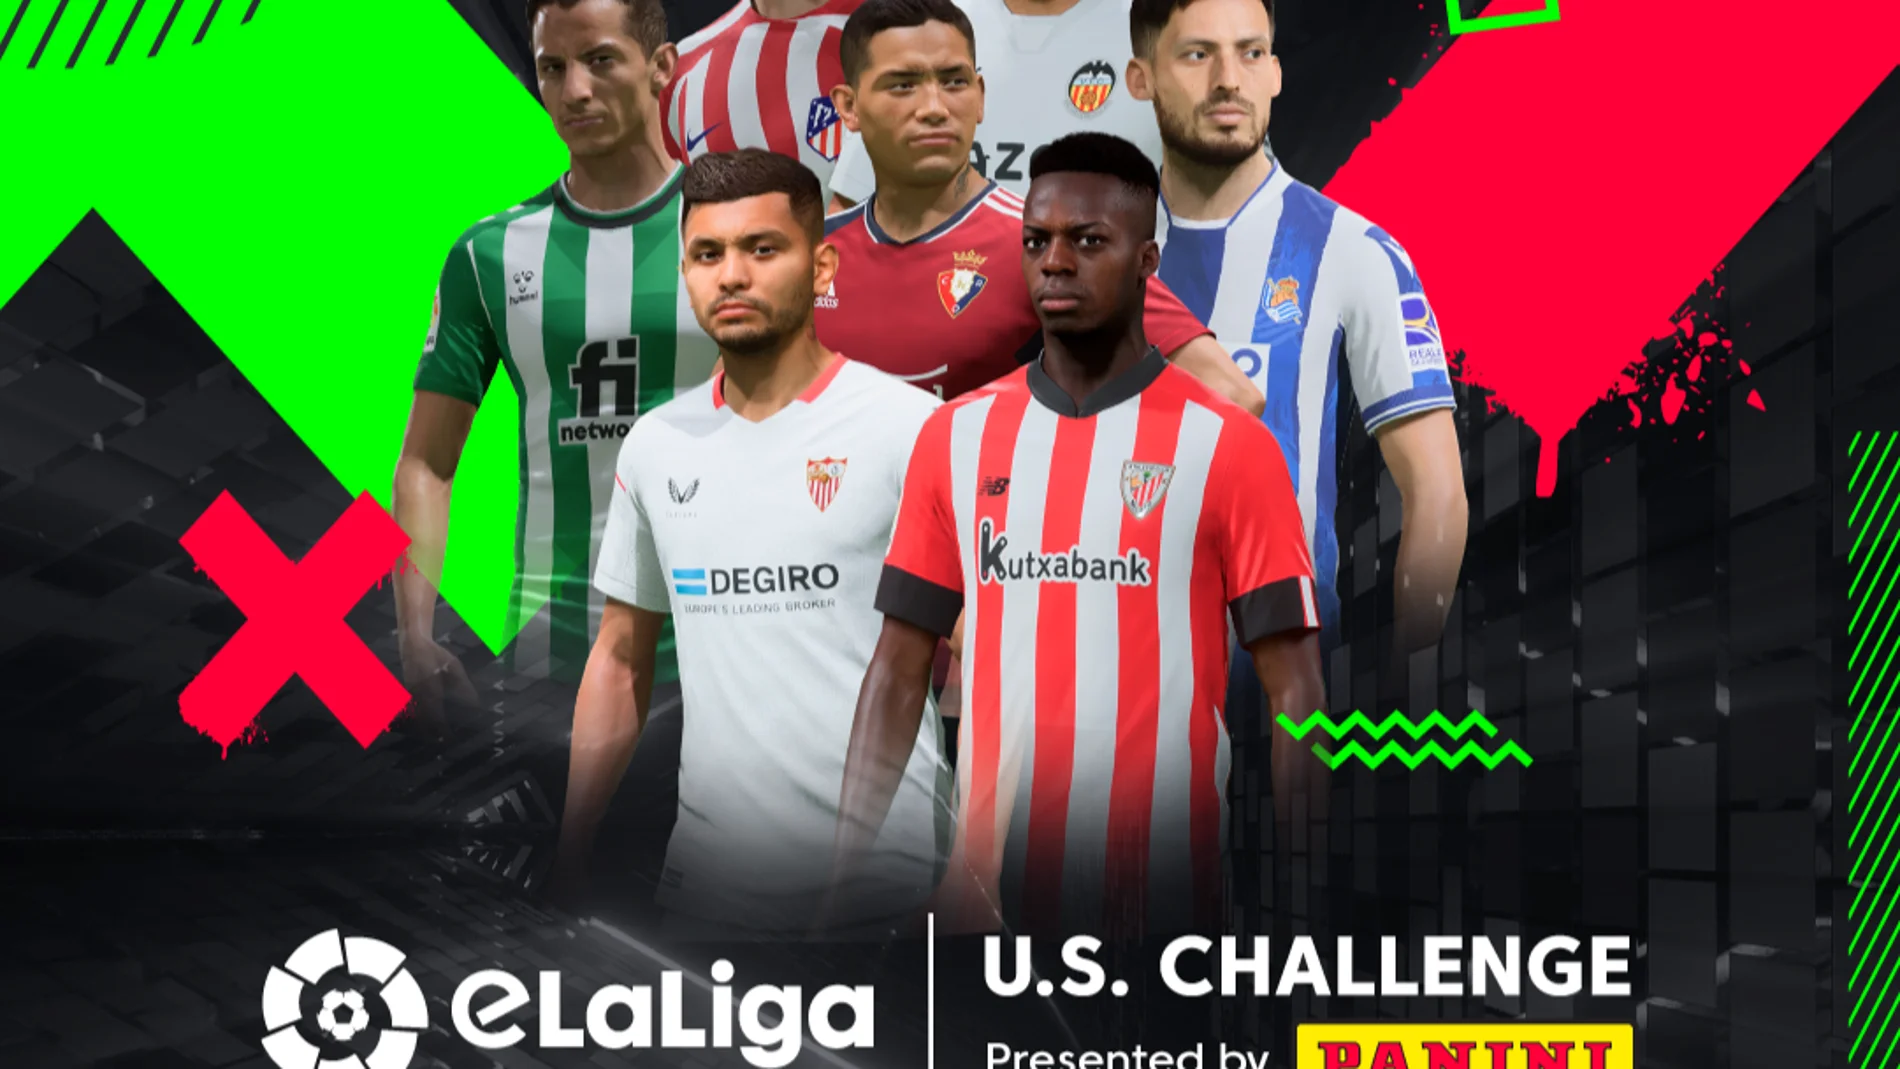 Llega la tercera edición de la eLaLiga U.S. Challenge y ficha a Panini América 